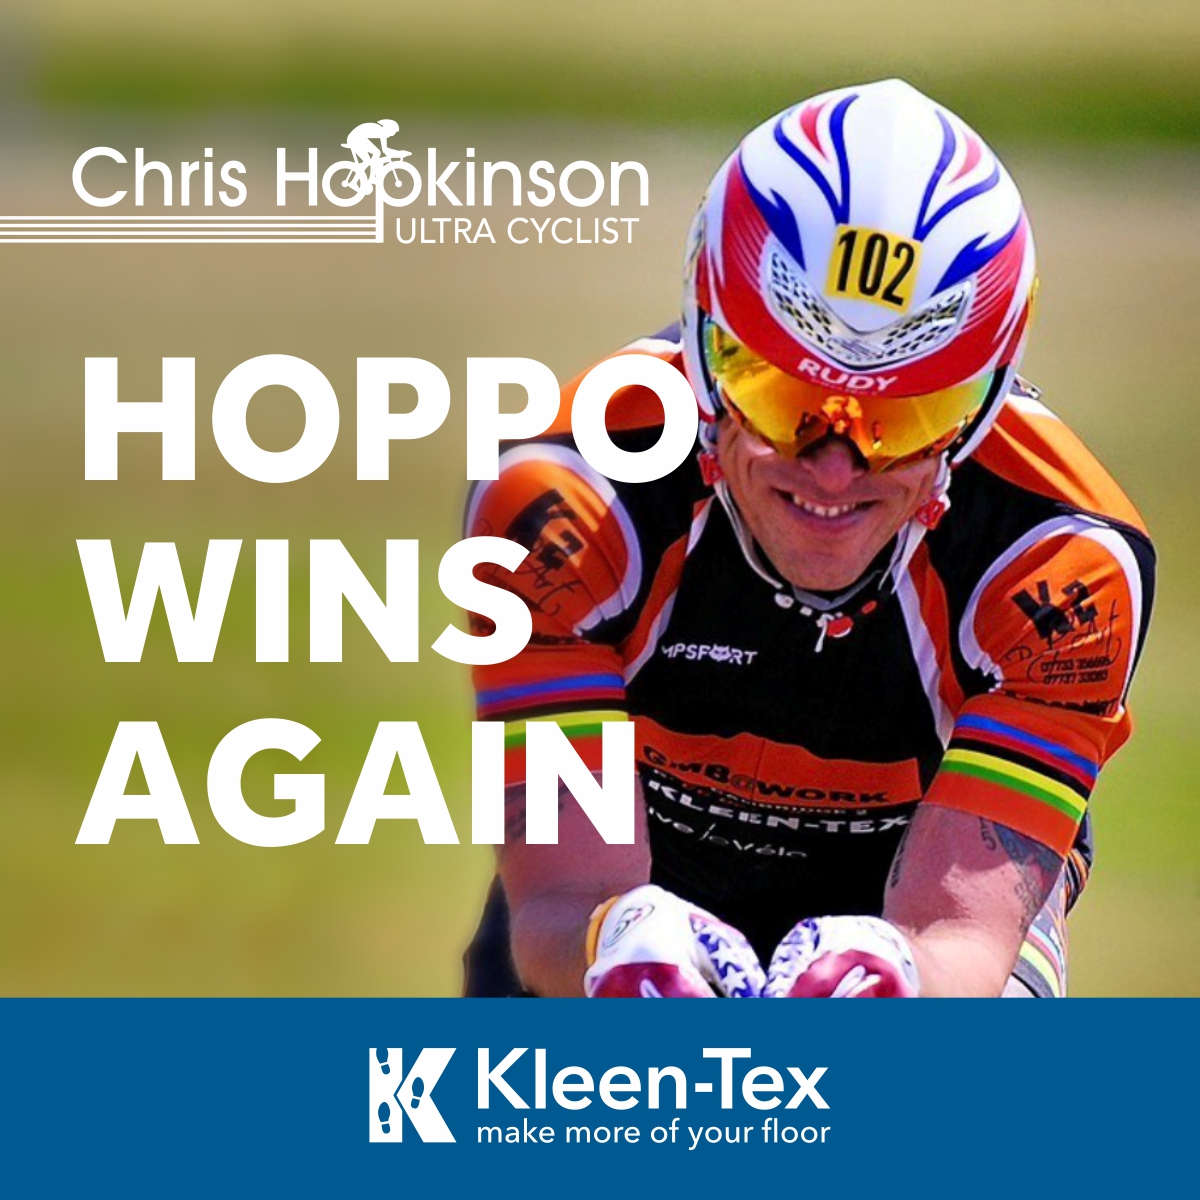 Hoppo wins again